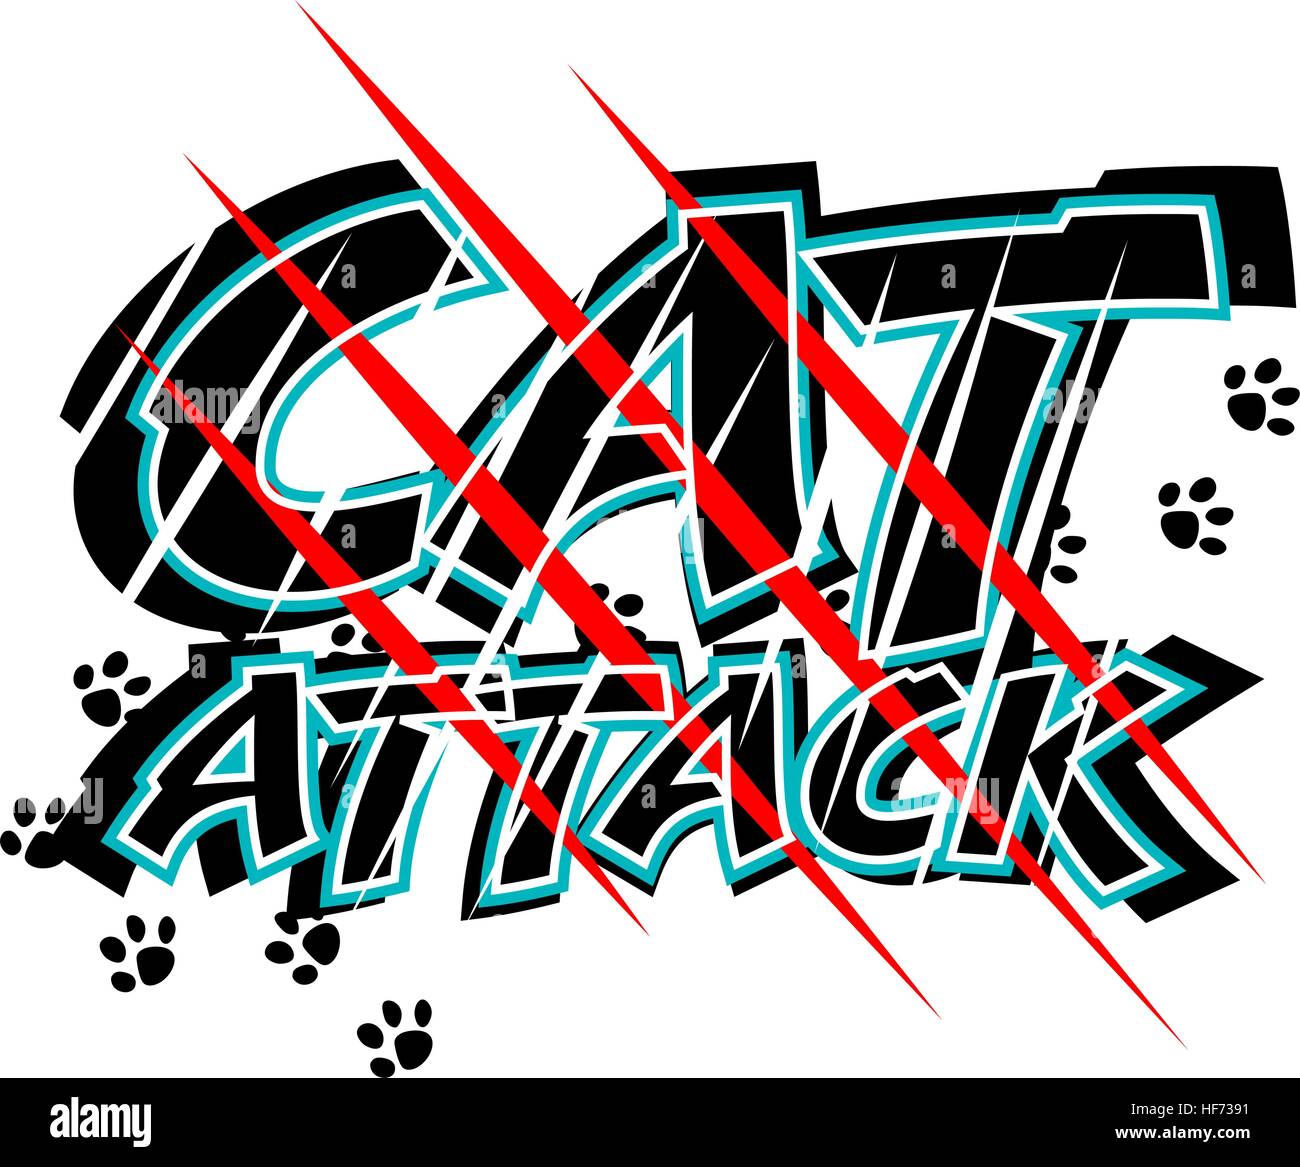 Vektor-Illustration der Klaue Kratzspuren durch den Worten Katze Angriff Stock Vektor